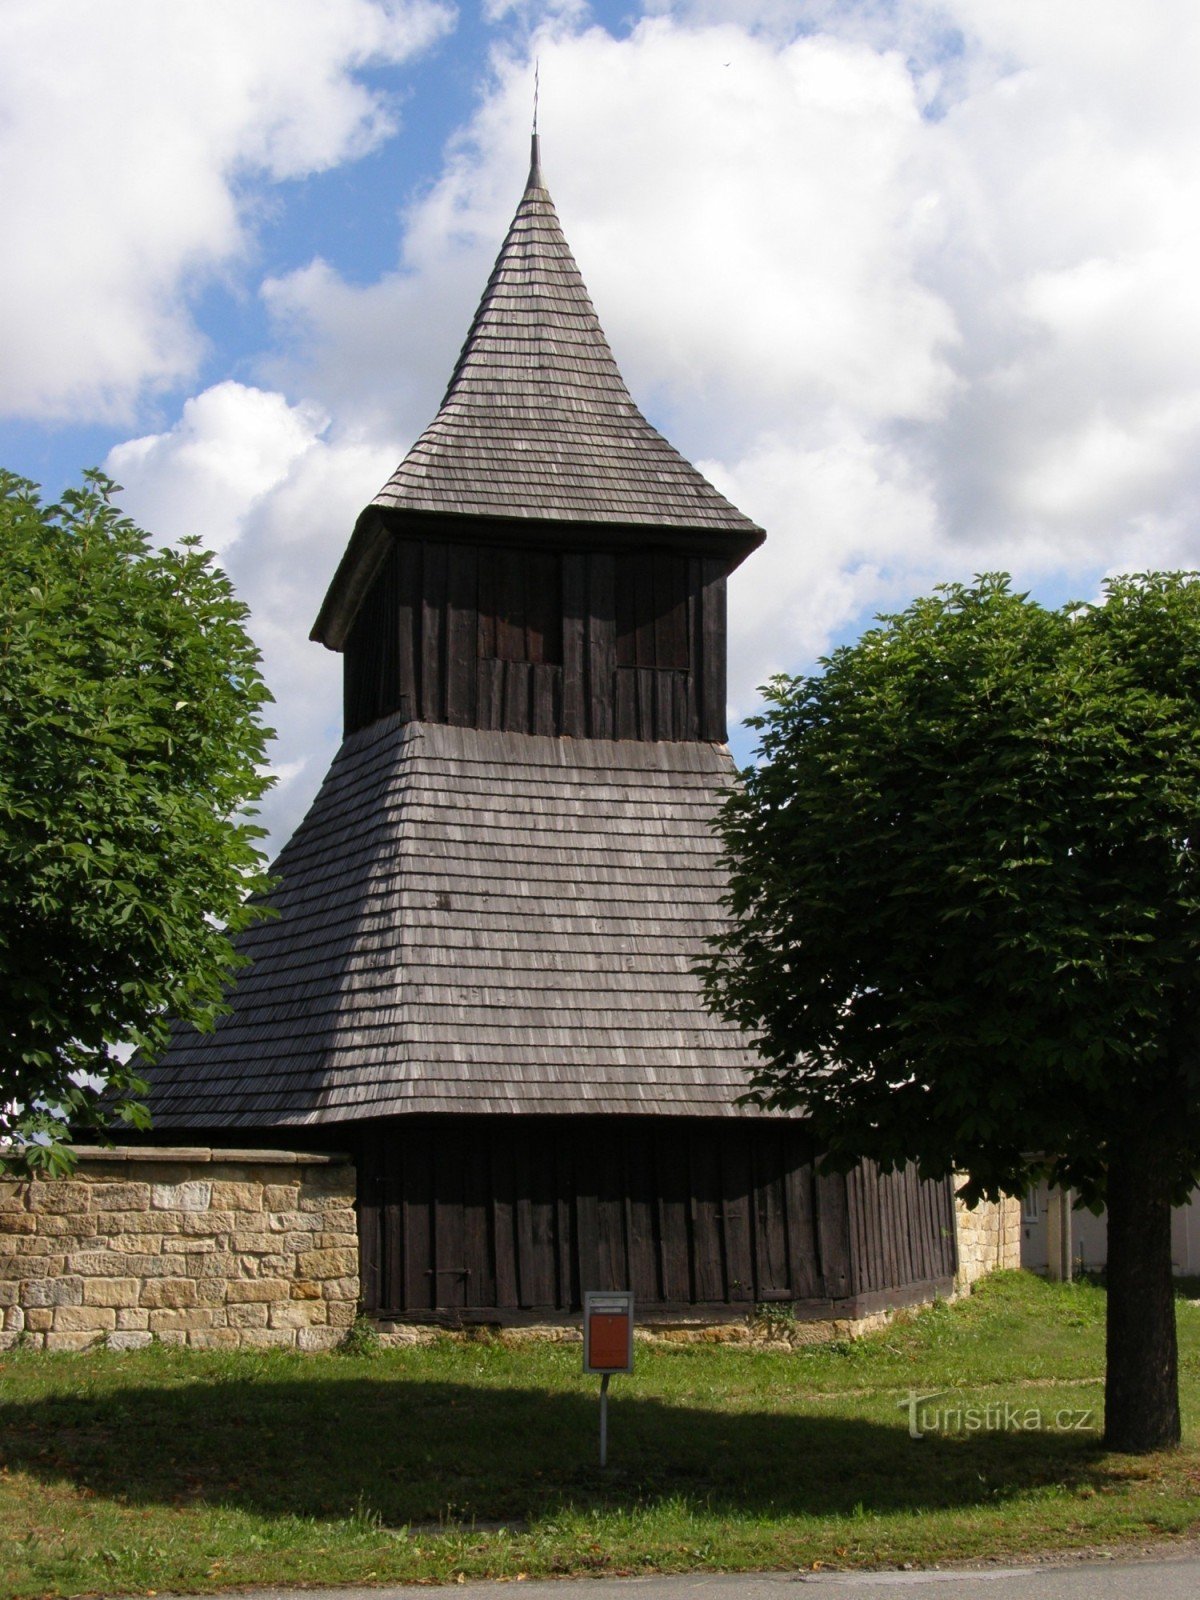 Vysočany - iglesia de madera de St. Mercados con campanario de madera